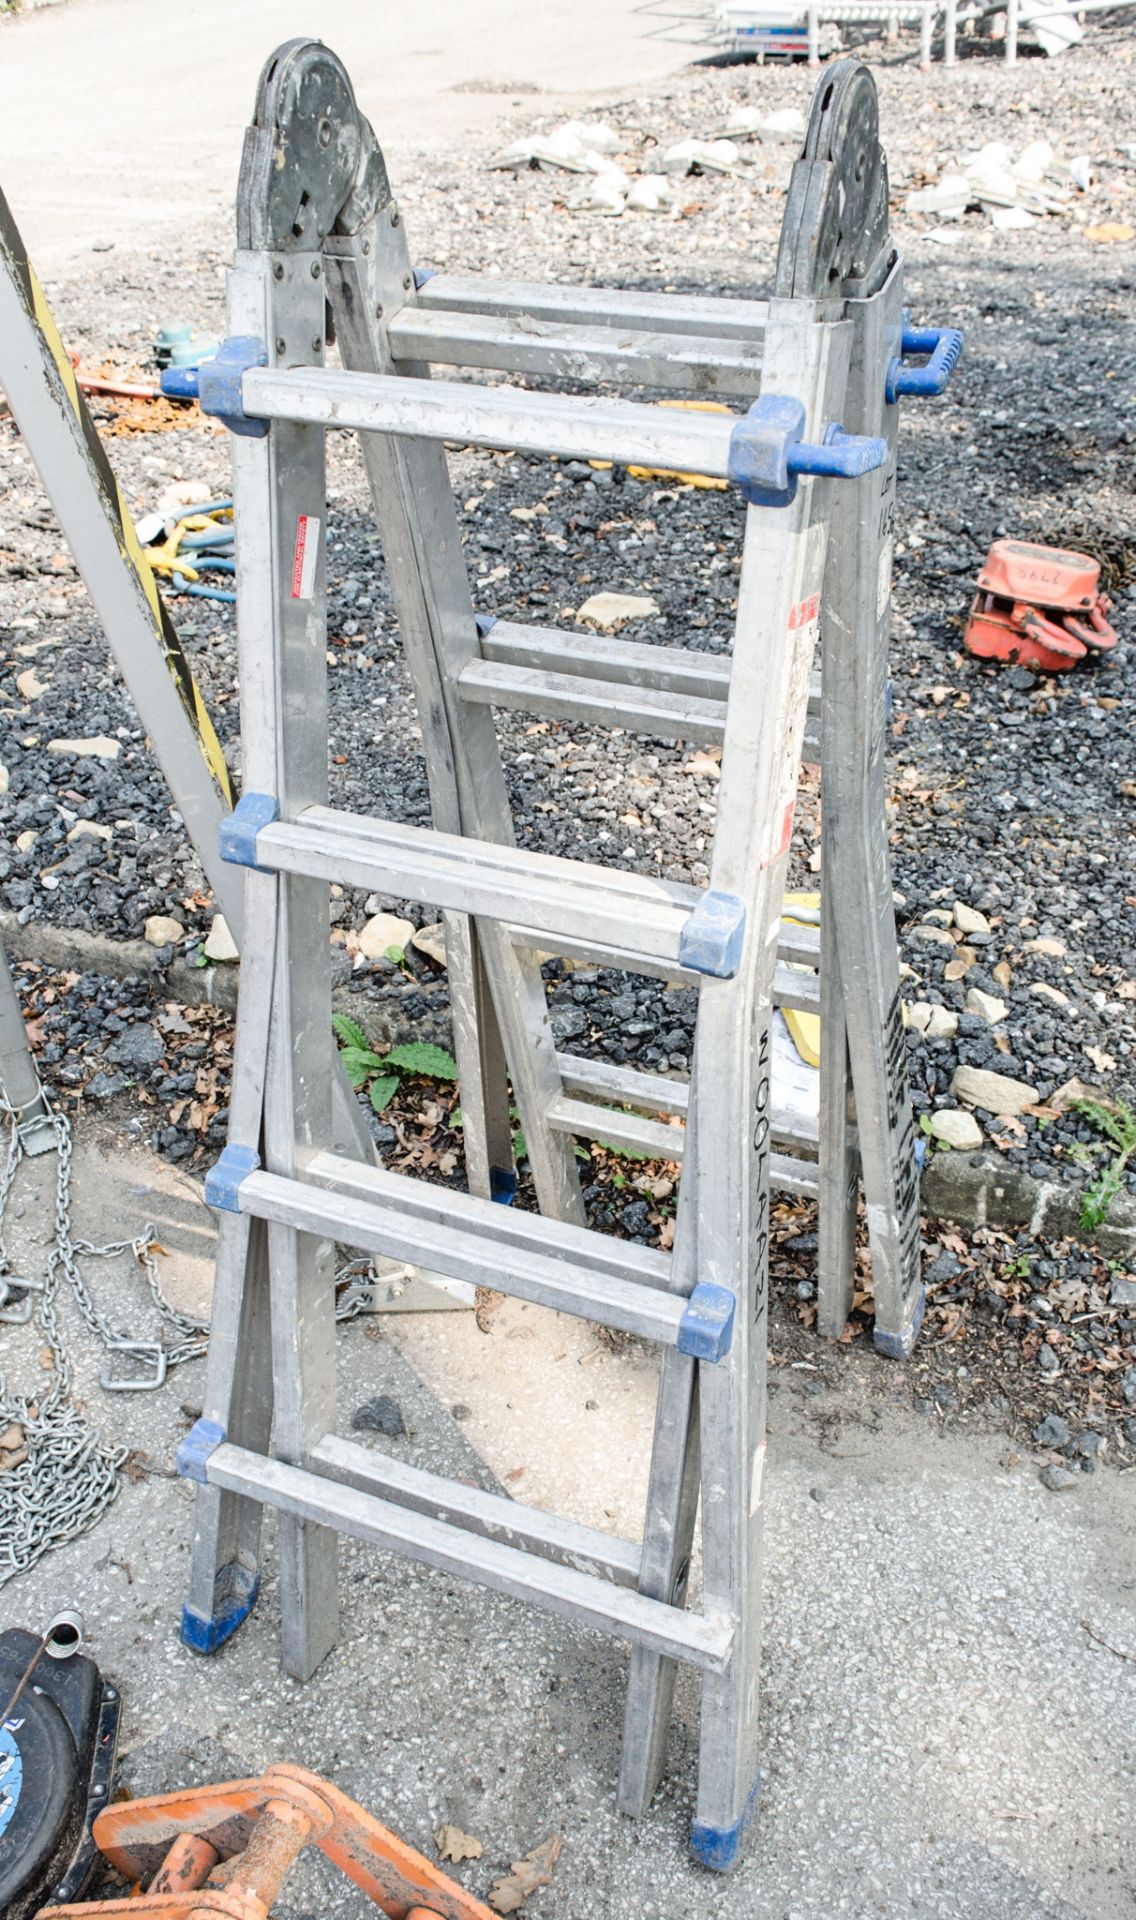 Aluminium step ladder